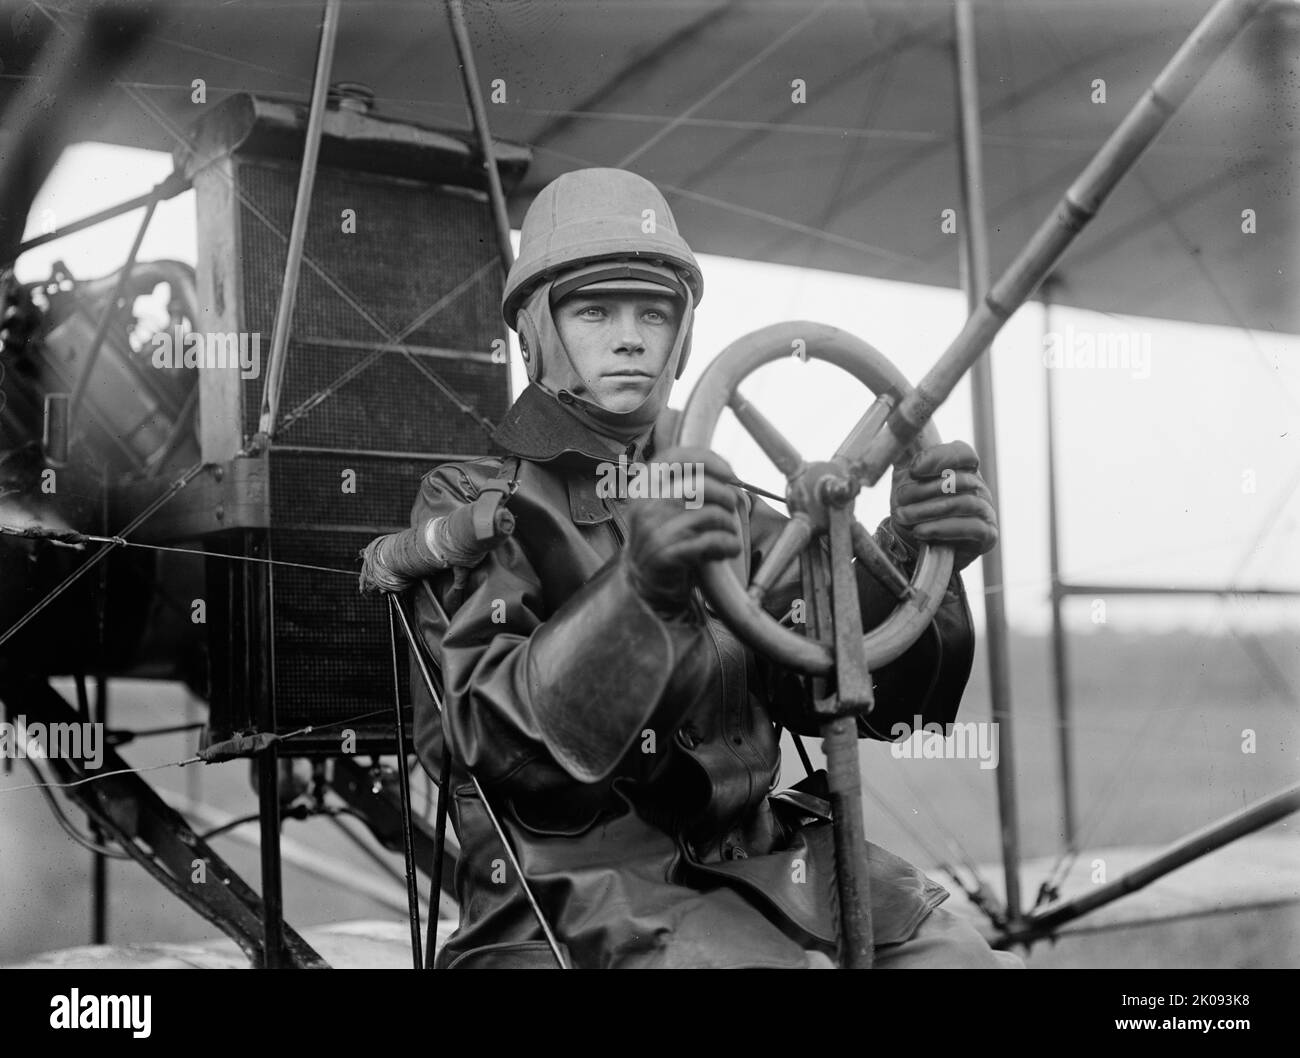 Army Aviation, College Park - Tests von Curtiss-Flugzeug für Armee - Single Control, 1912. [Frühe Luftfahrt, Maryland, USA. Leutnant Thomas DeWitt Milling war der erste bewertete Pilot in der Geschichte der United States Air Force]. Stockfoto